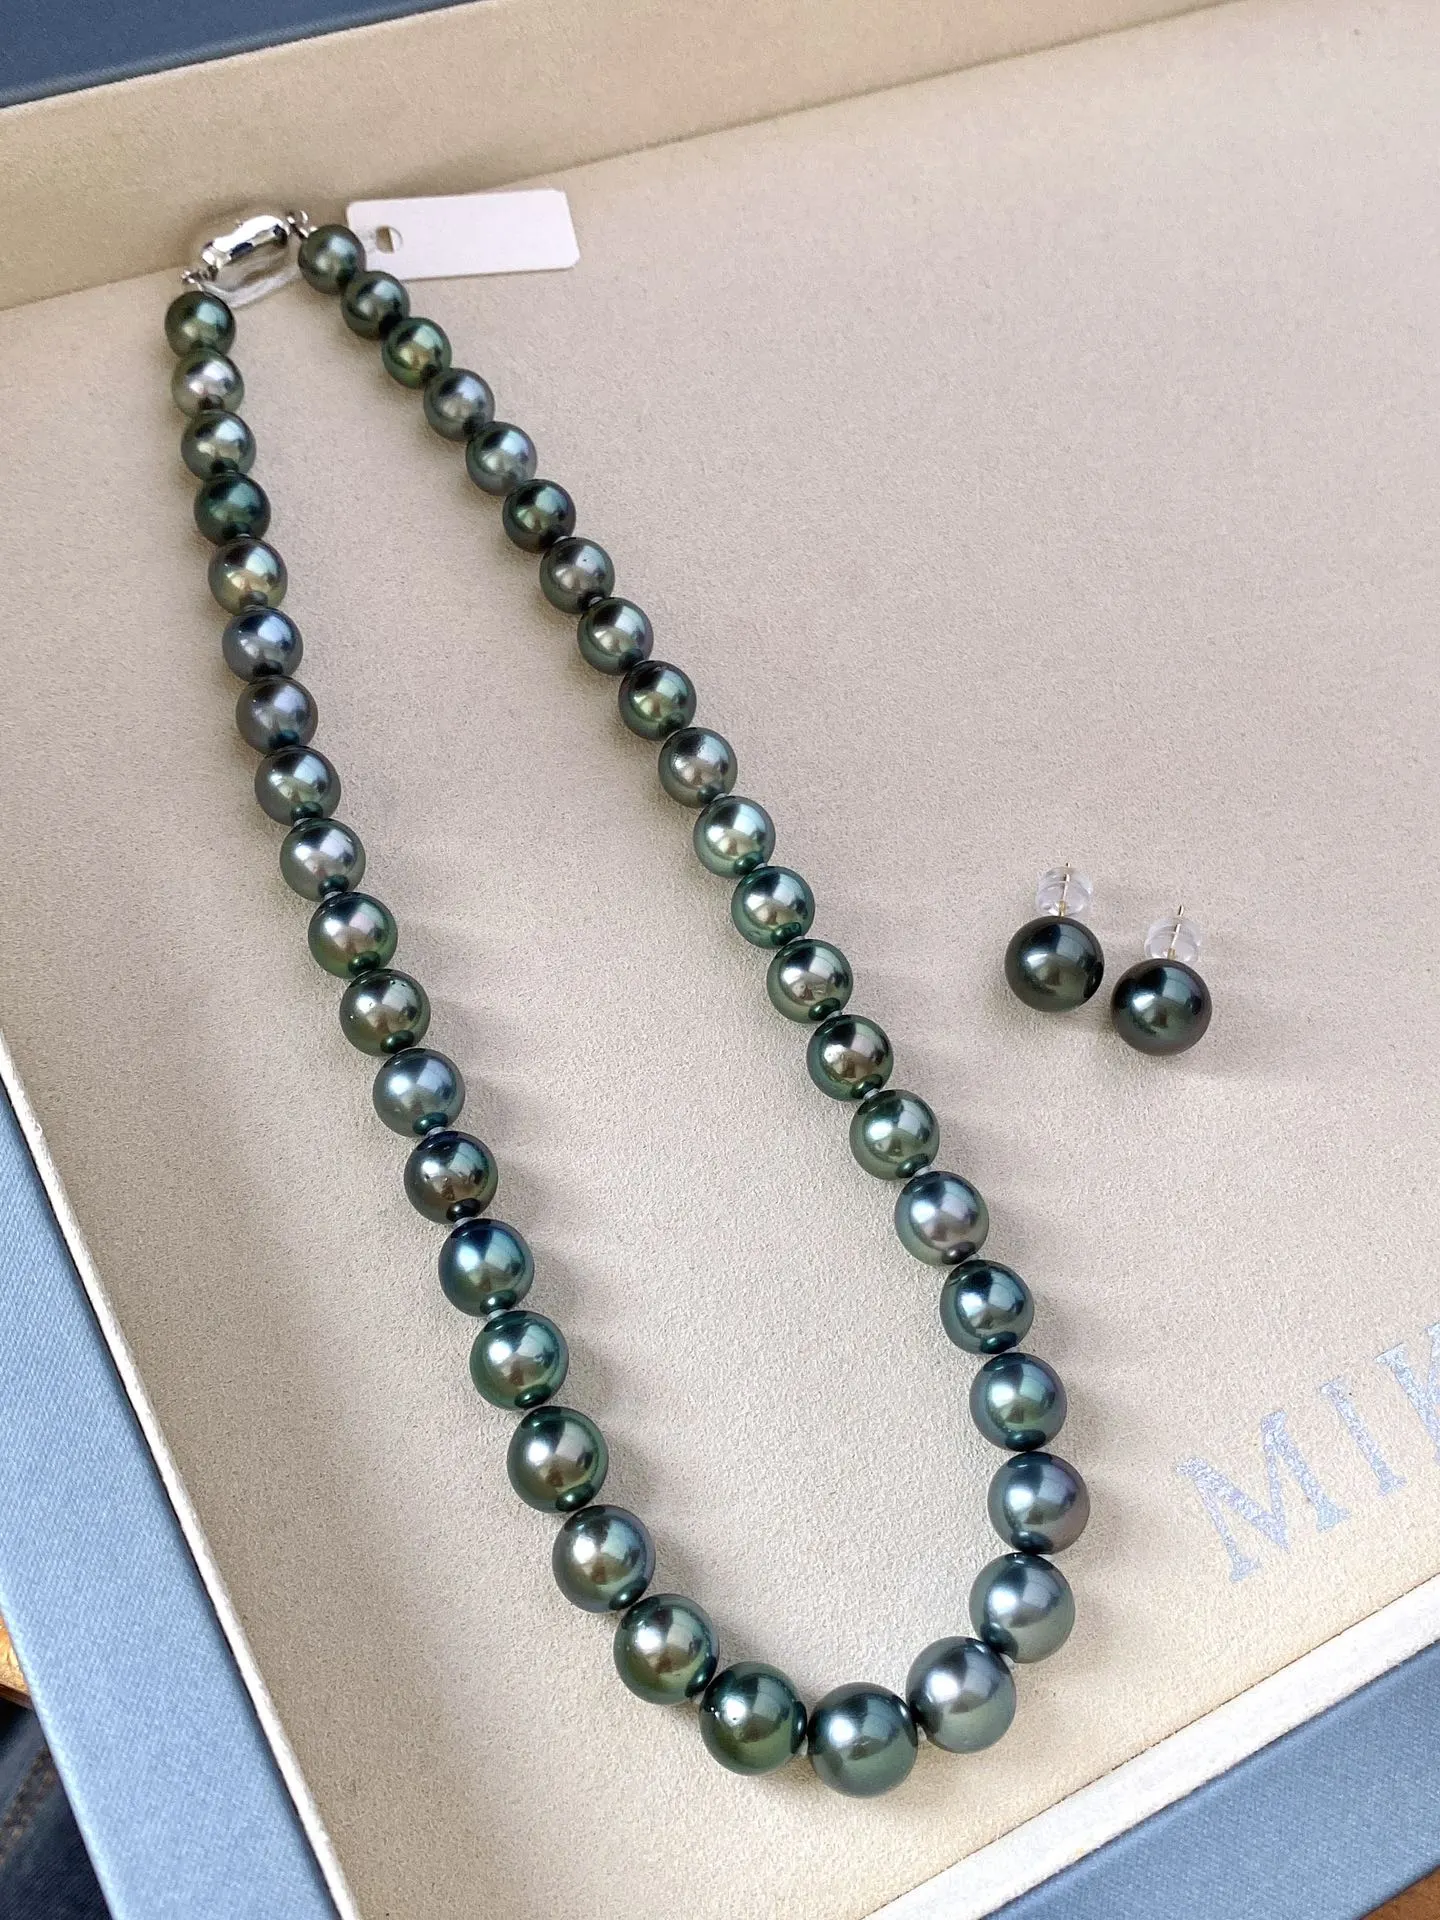 一套孔雀绿项链，颜色漂亮珠光美，规格：8.9-11.1mm，黄金尺寸，耳钉：11-12mm，上身效果